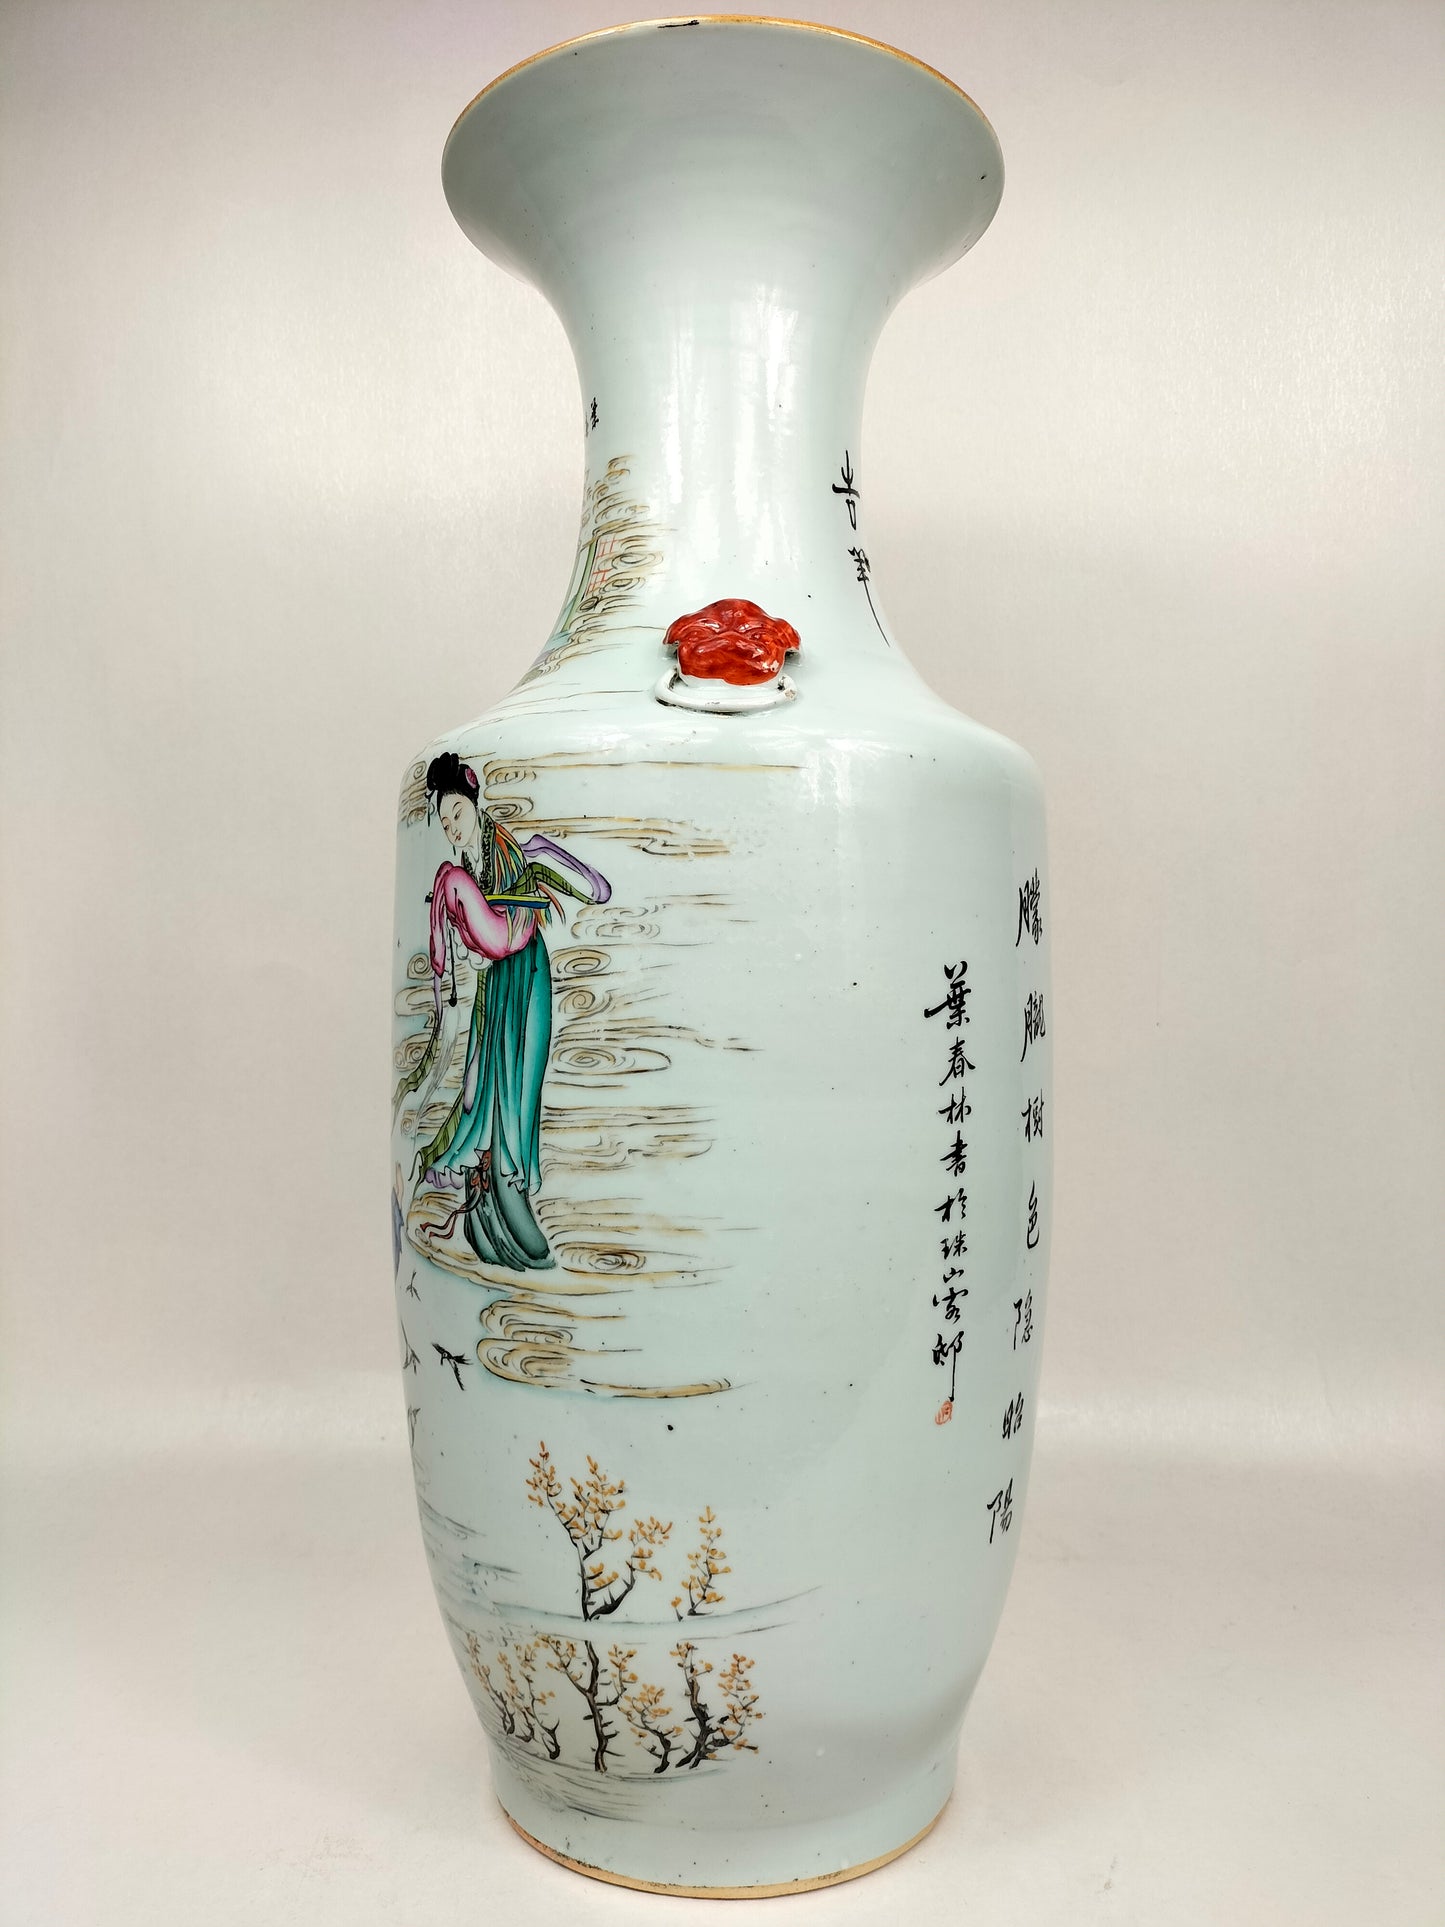 Grande vaso chinês antigo decorado com figuras e búfalos // Período da República (1912-1949)